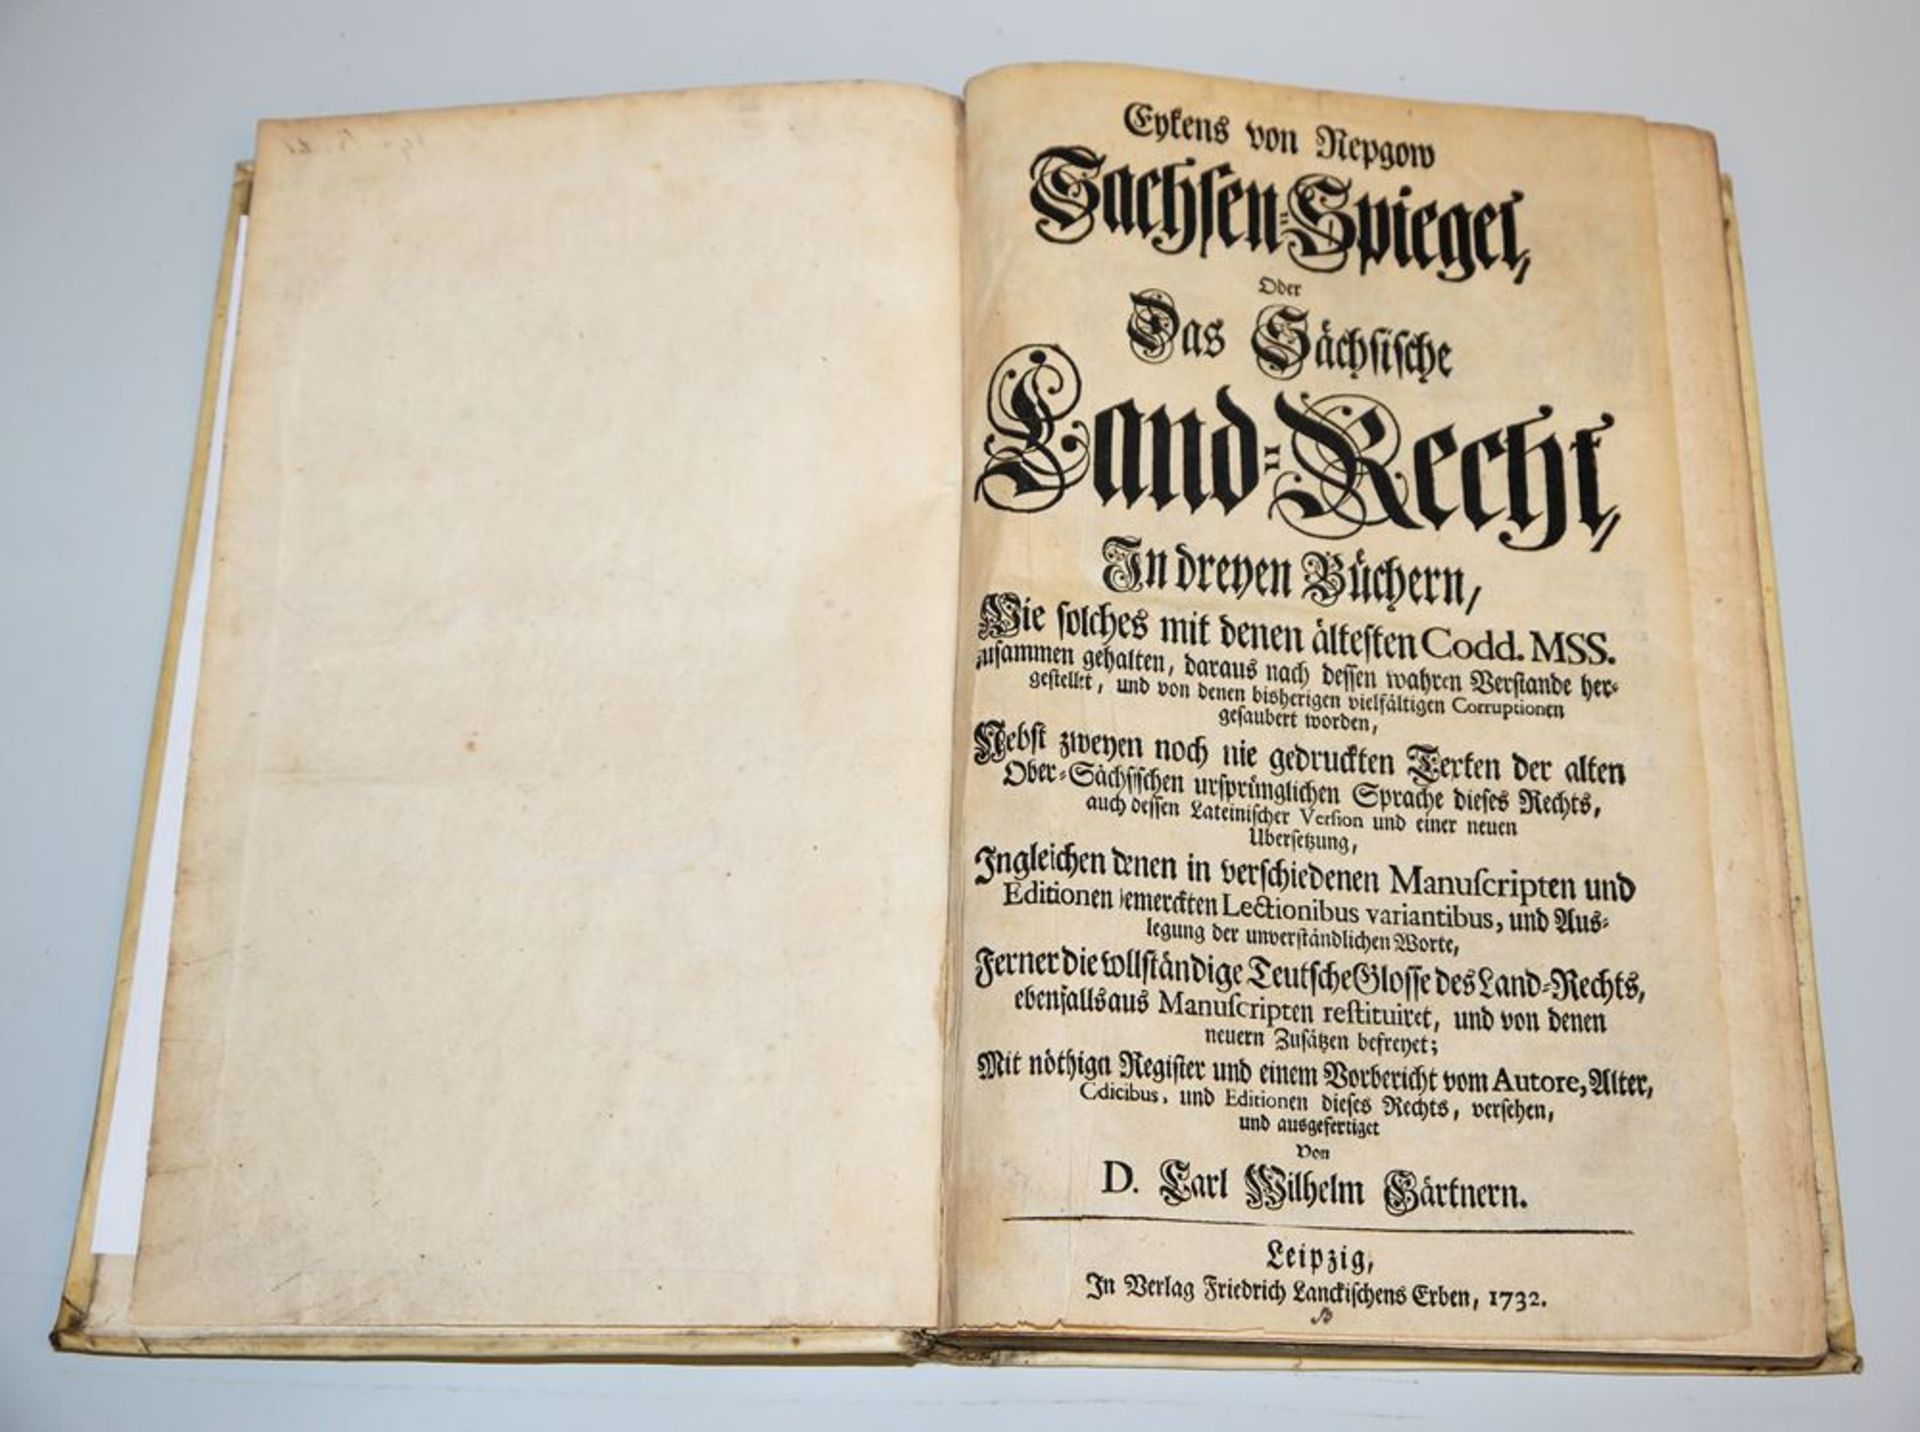 Sachsen-Spiegel, Oder das Sächsische Land-Recht, In dreyen Büchern, Leipzig 1732